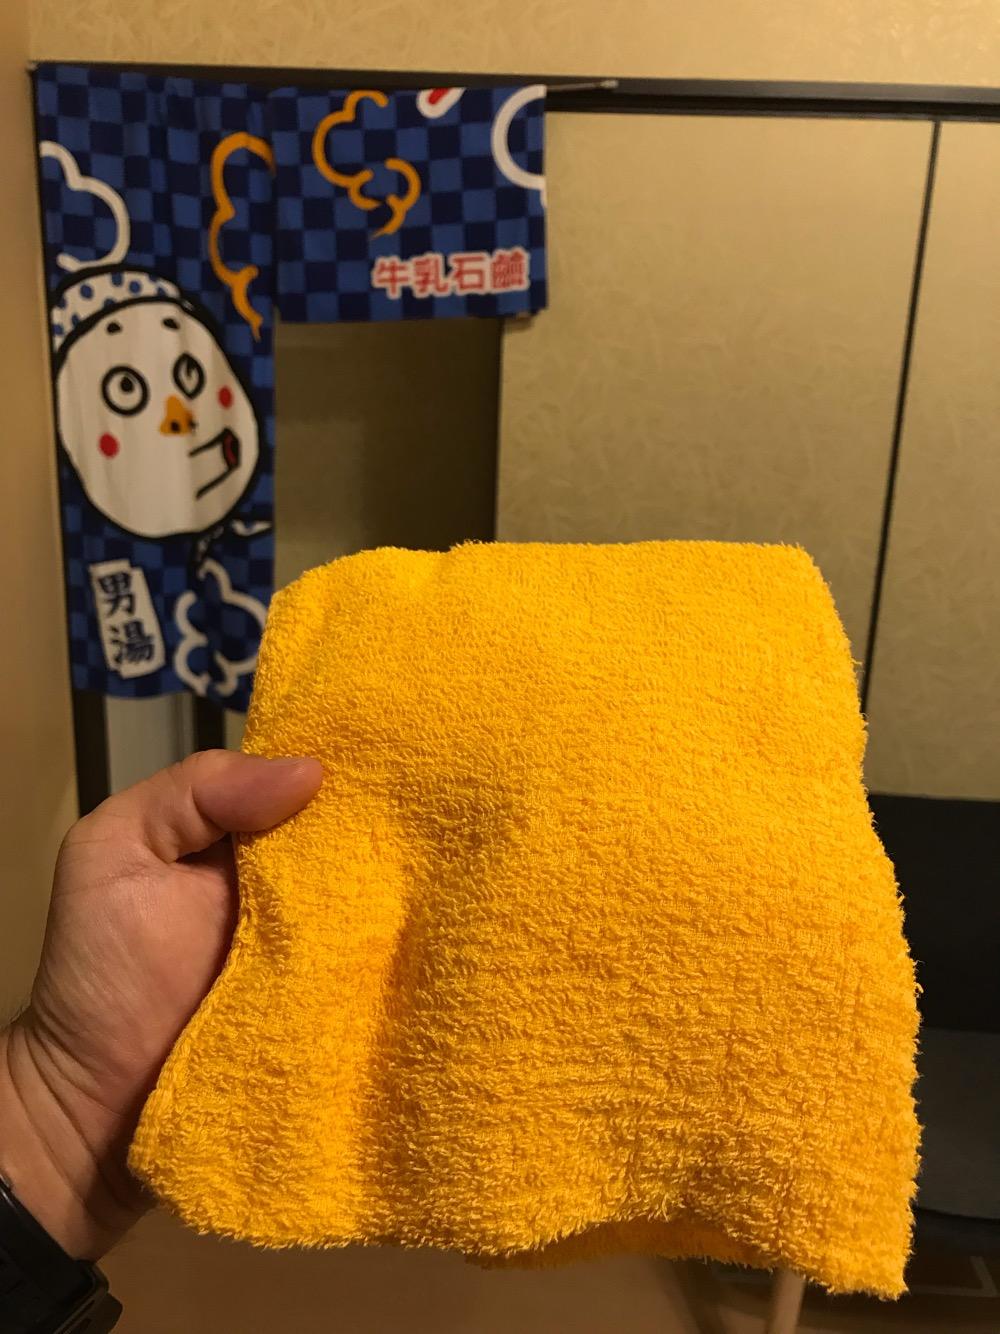 東京都足立区の銭湯・大和湯で貸してもらえる無料のタオル